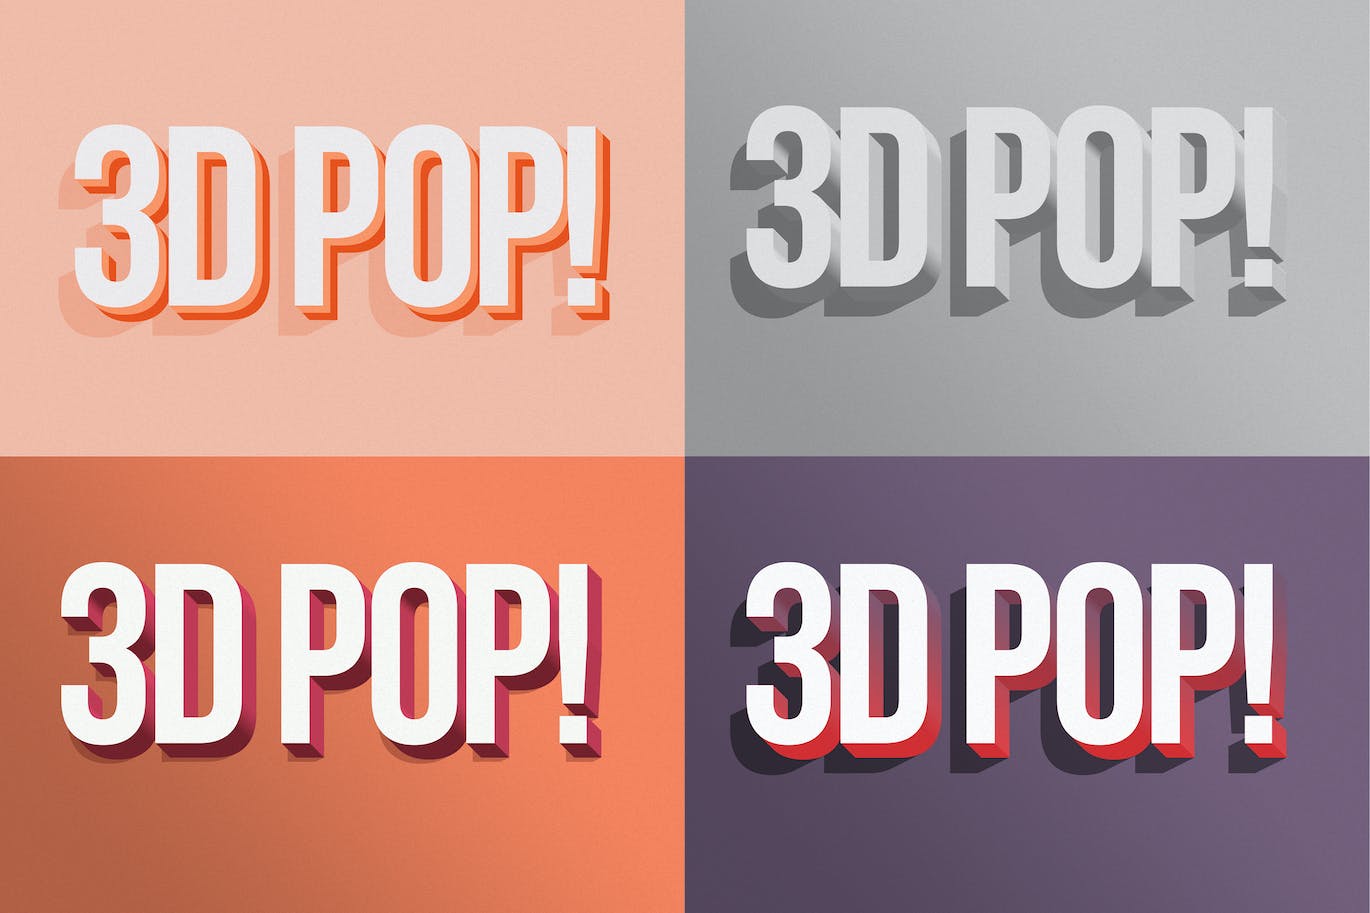 3D立体风格ps文字效果样式v2 3D POP! Photoshop Effects Vol. 2 设计素材 第2张